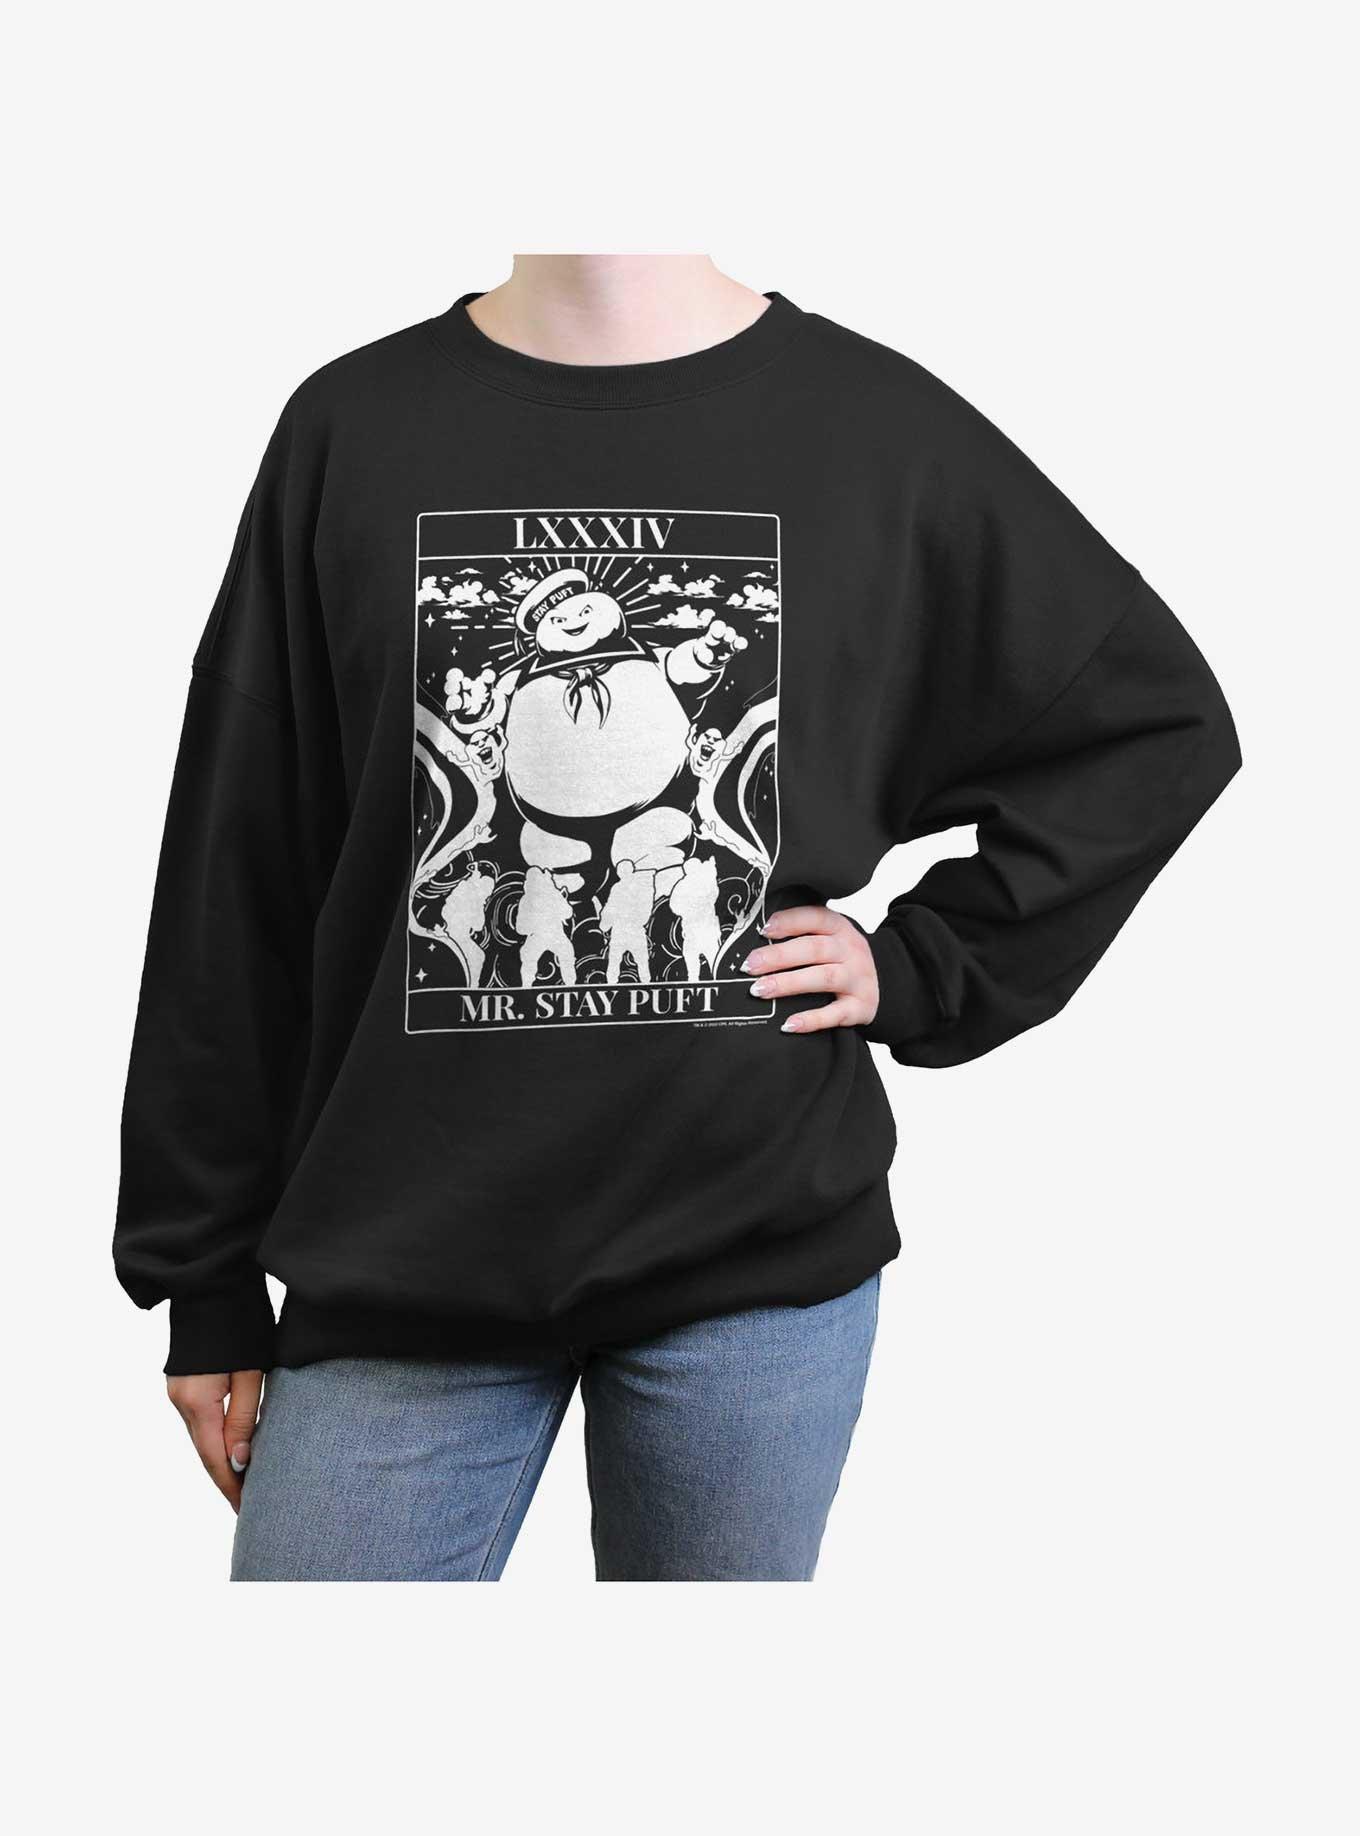 Ghostbusters Puft Tarot Girls Oversized Sweatshirt, BLACK, hi-res